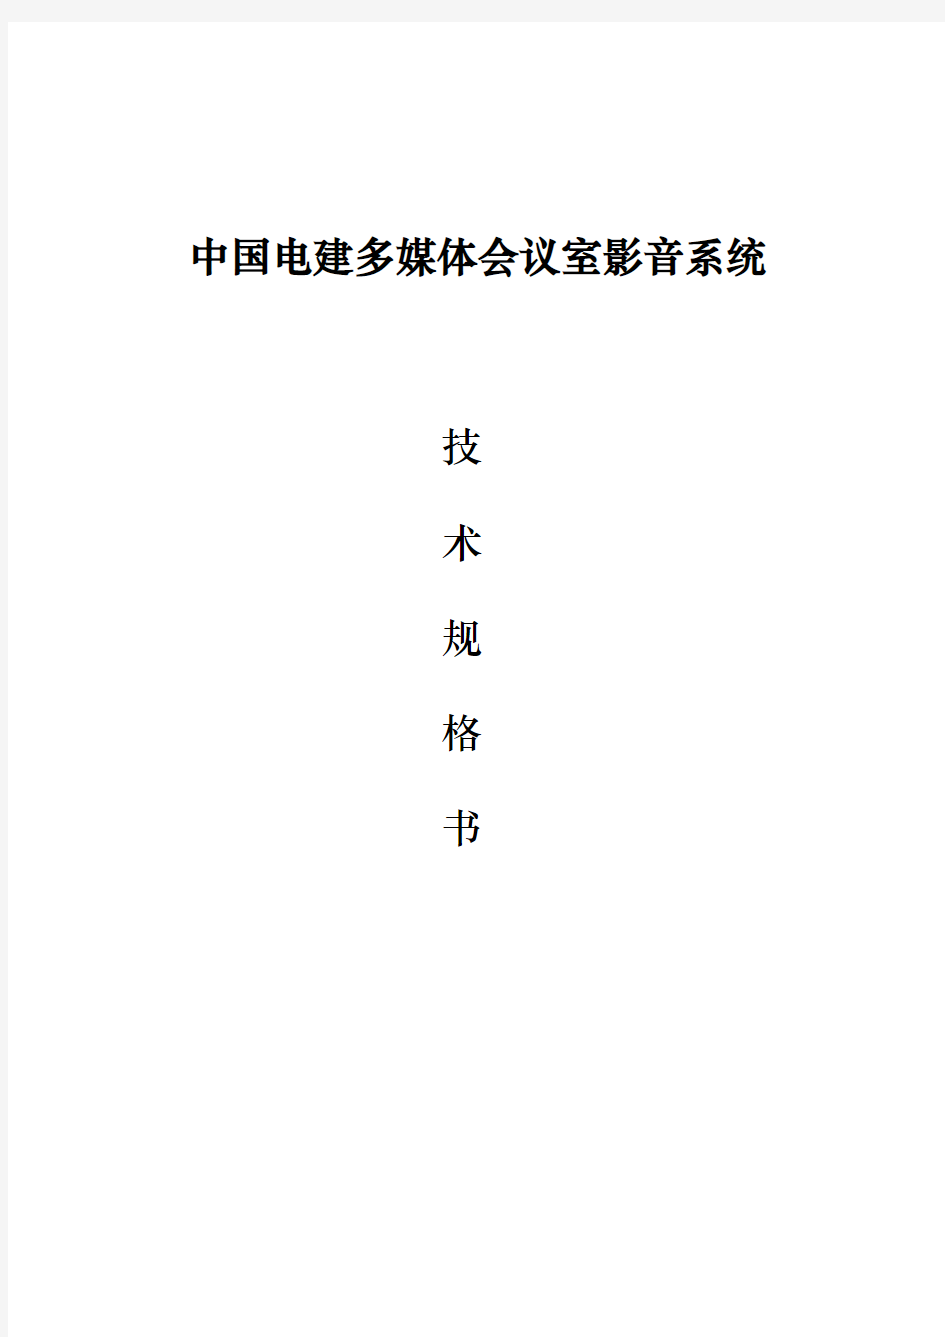 中国电建多媒体会议室影音系统技术规范书